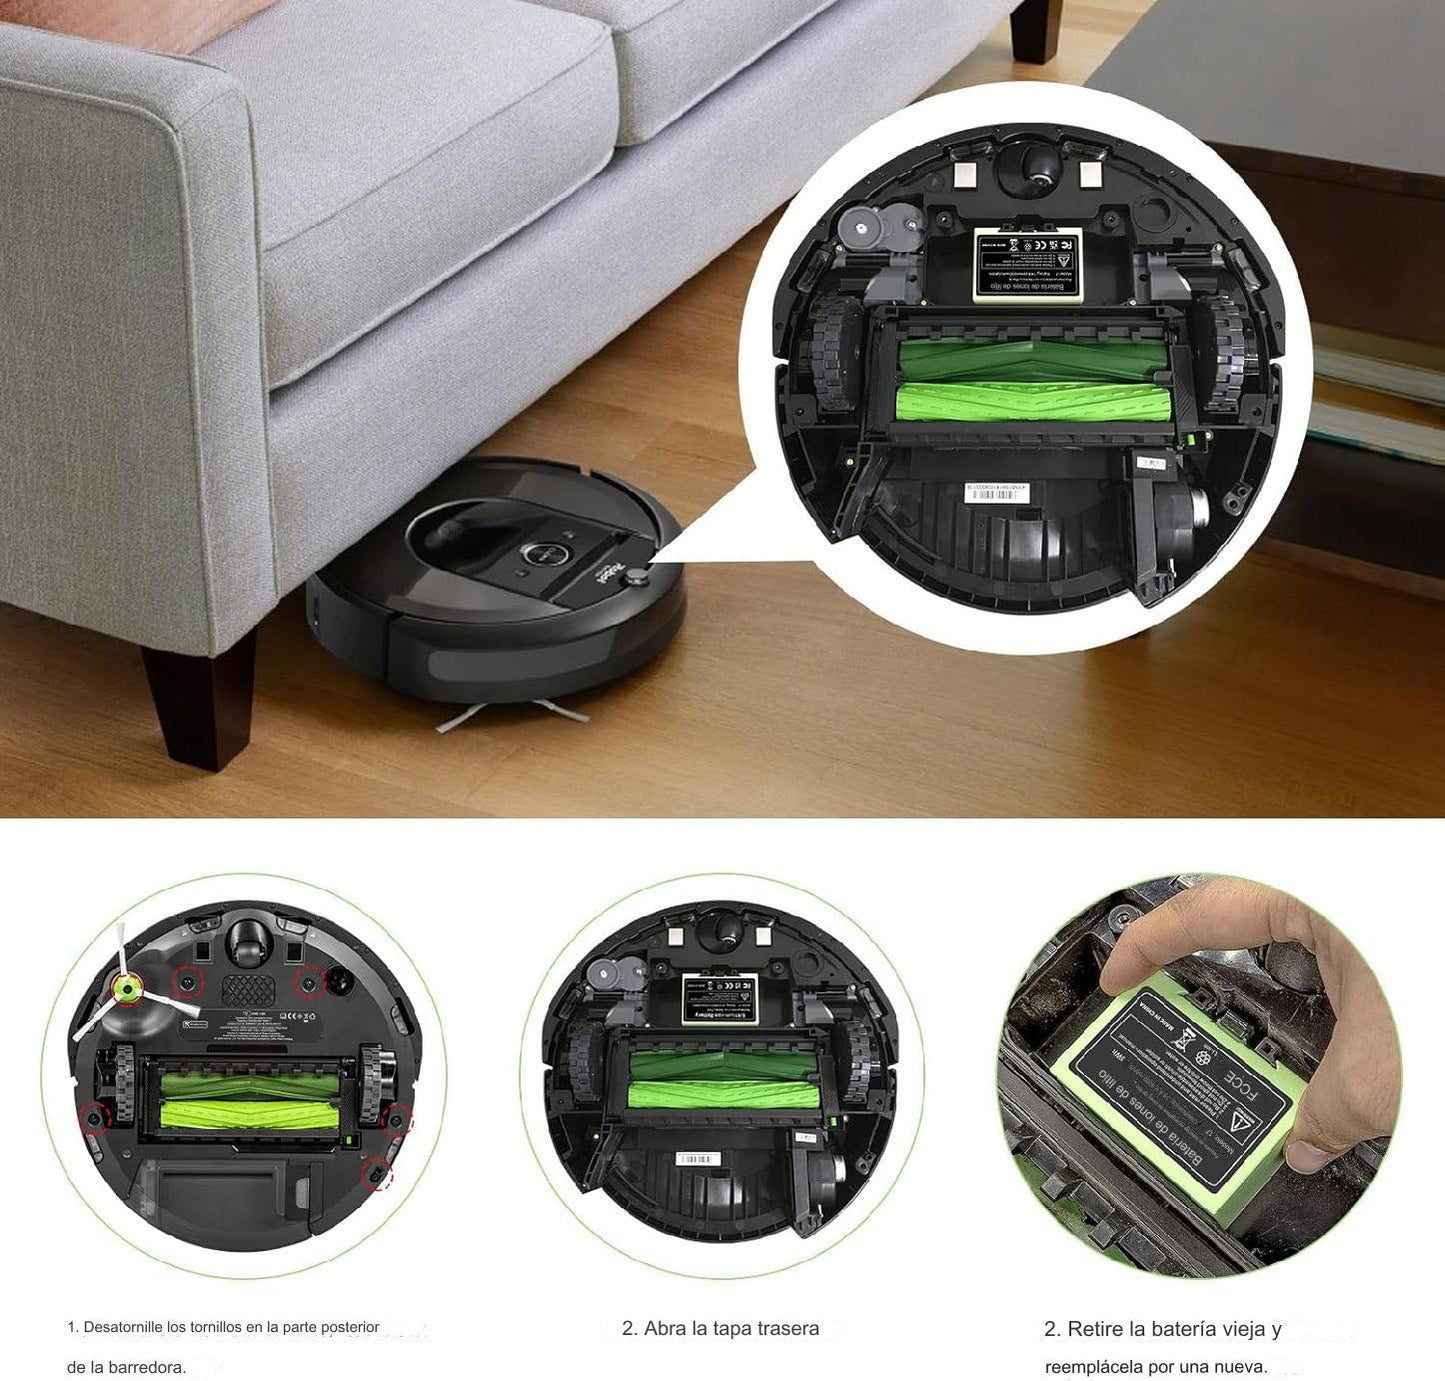 Bateria 4000mAh: Compatible con Roomba Irobot series E, I y J